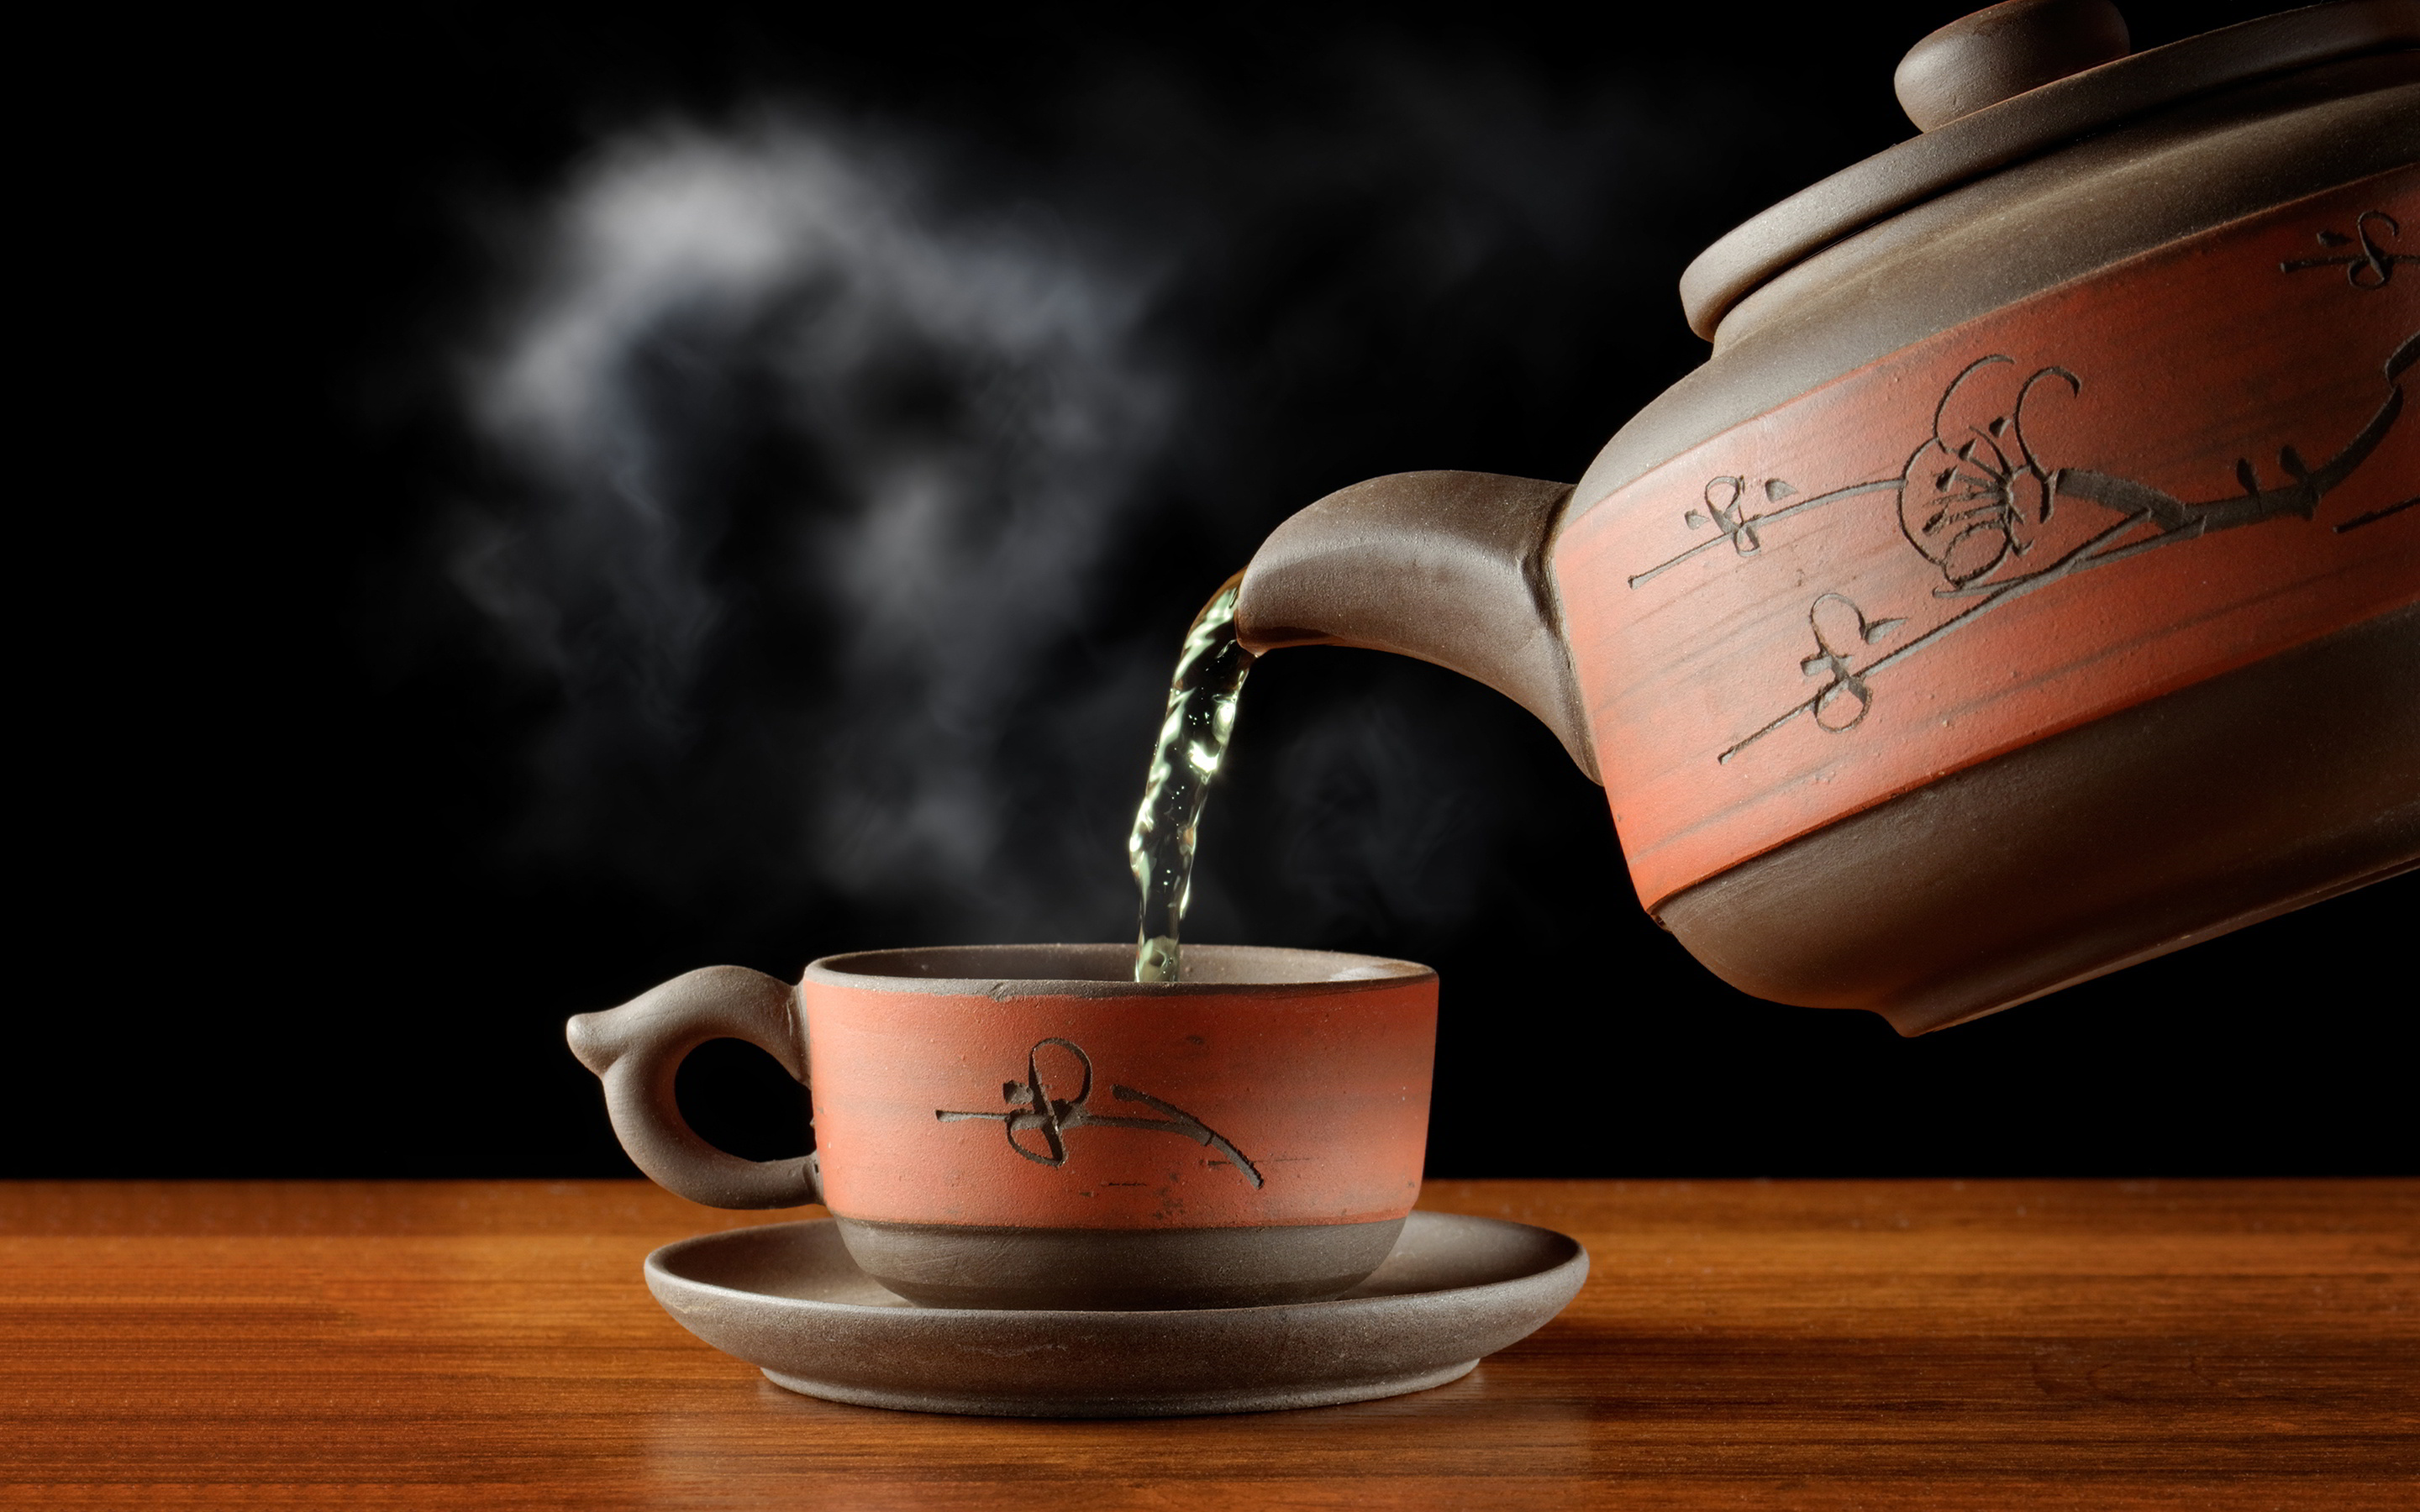 Tea: Ceramic teapot, Hot beverage. 2880x1800 HD Wallpaper.